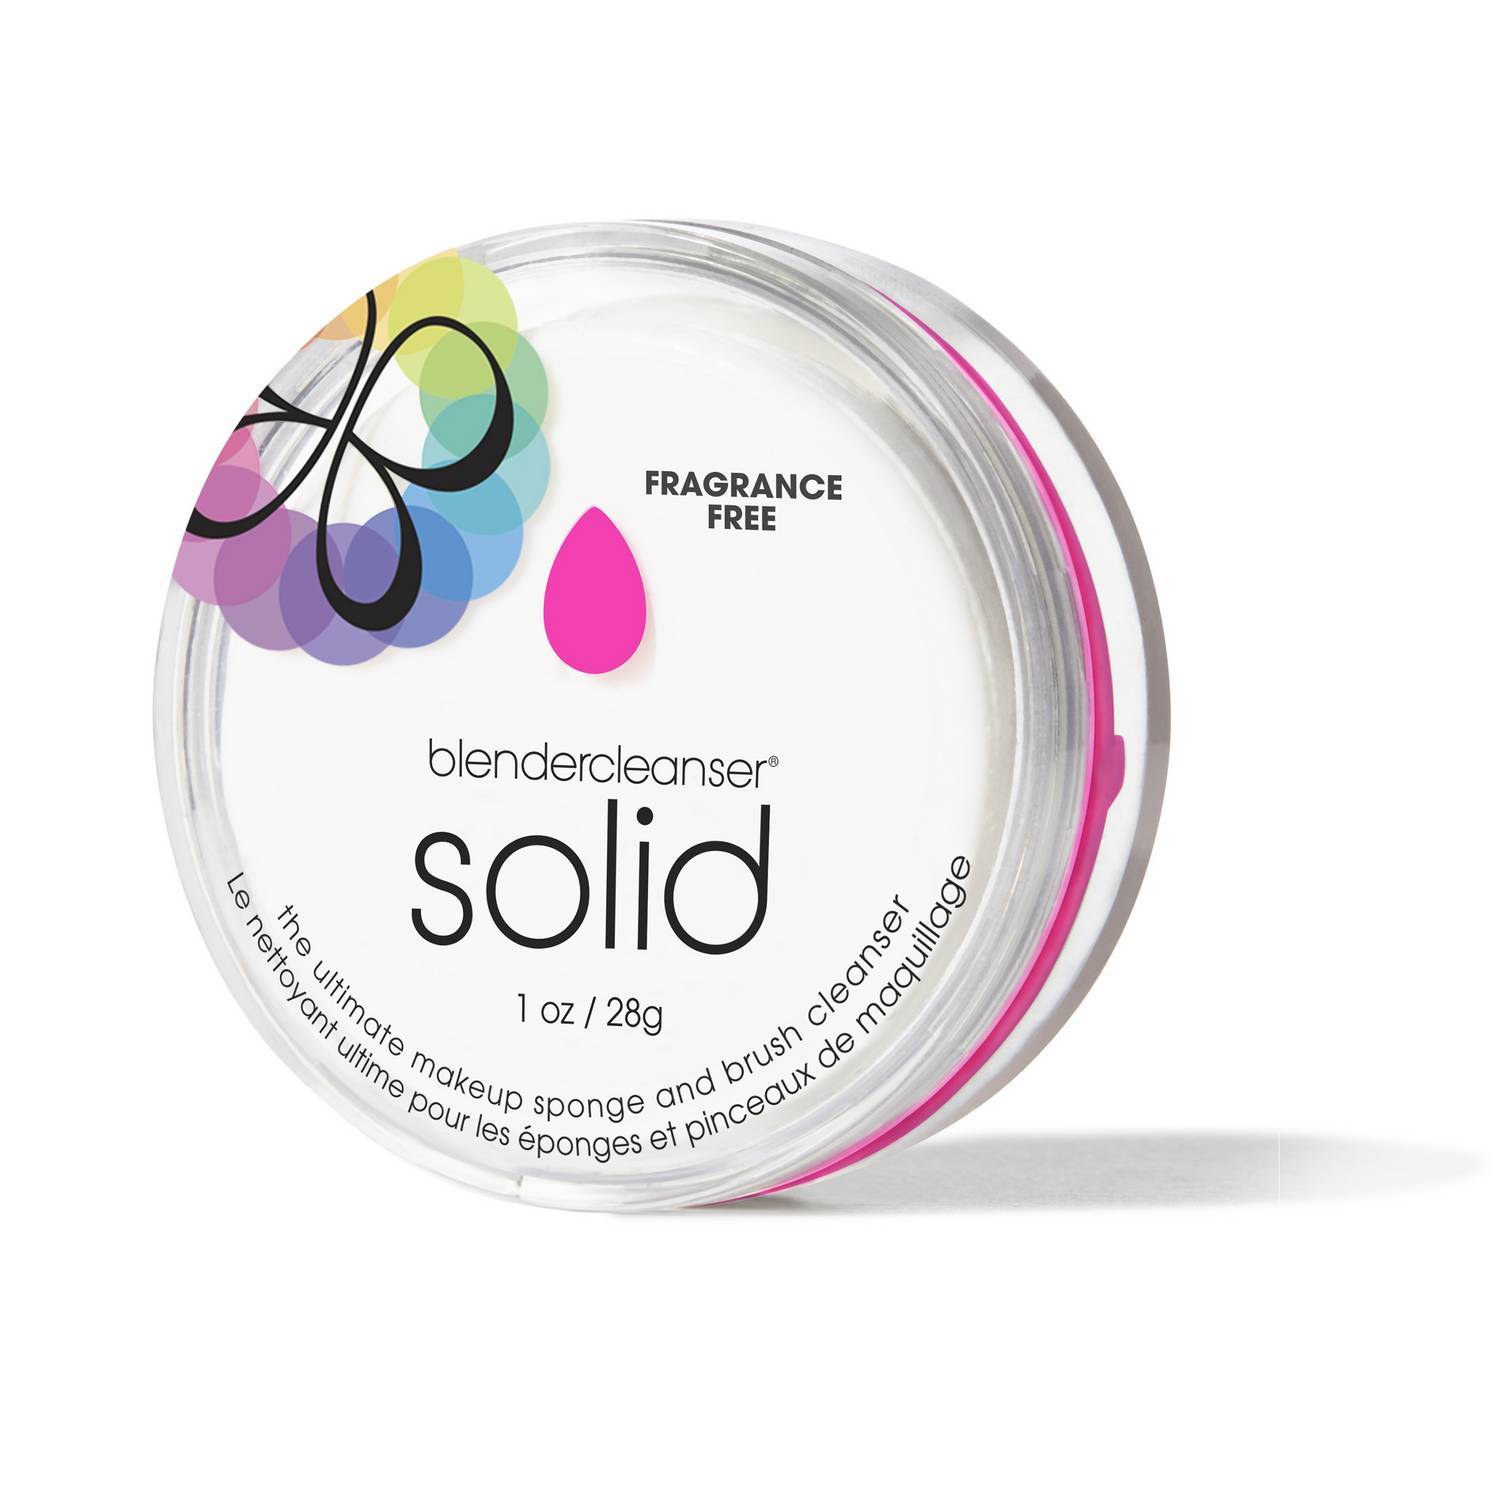 Beautyblender Blendercleanser Solid Soap